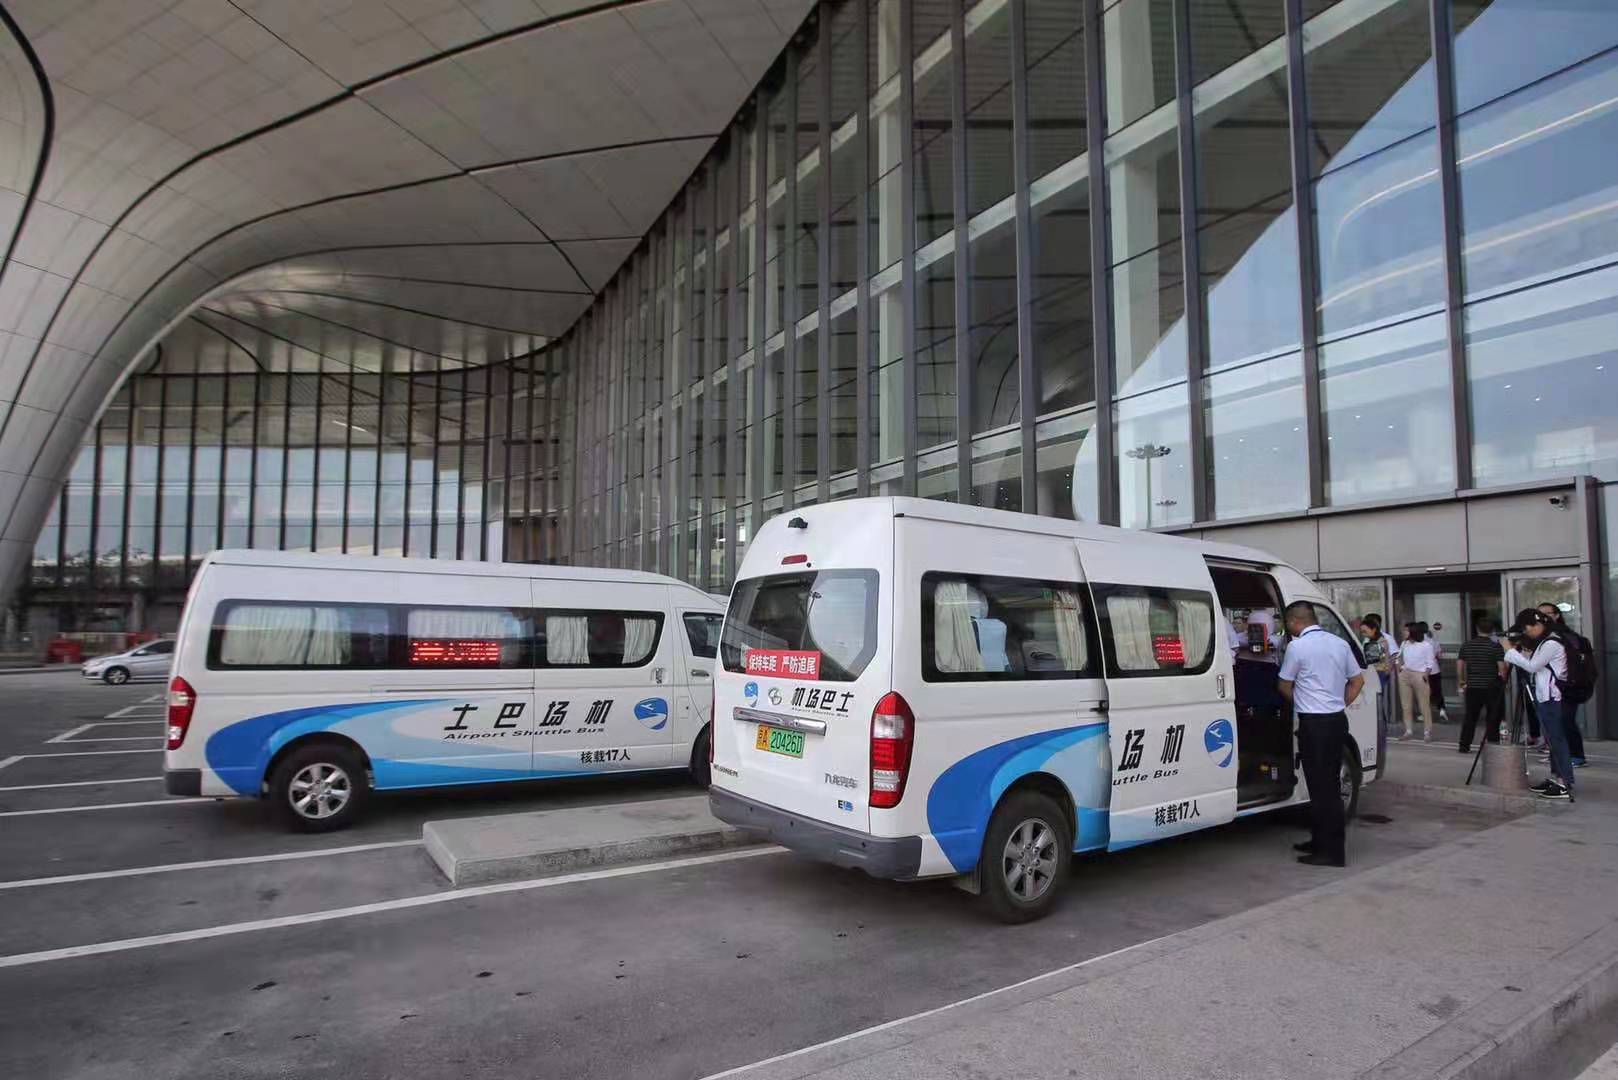 机场巴士全部采用纯电动的新能源车型,由于运营初期从大兴机场出发